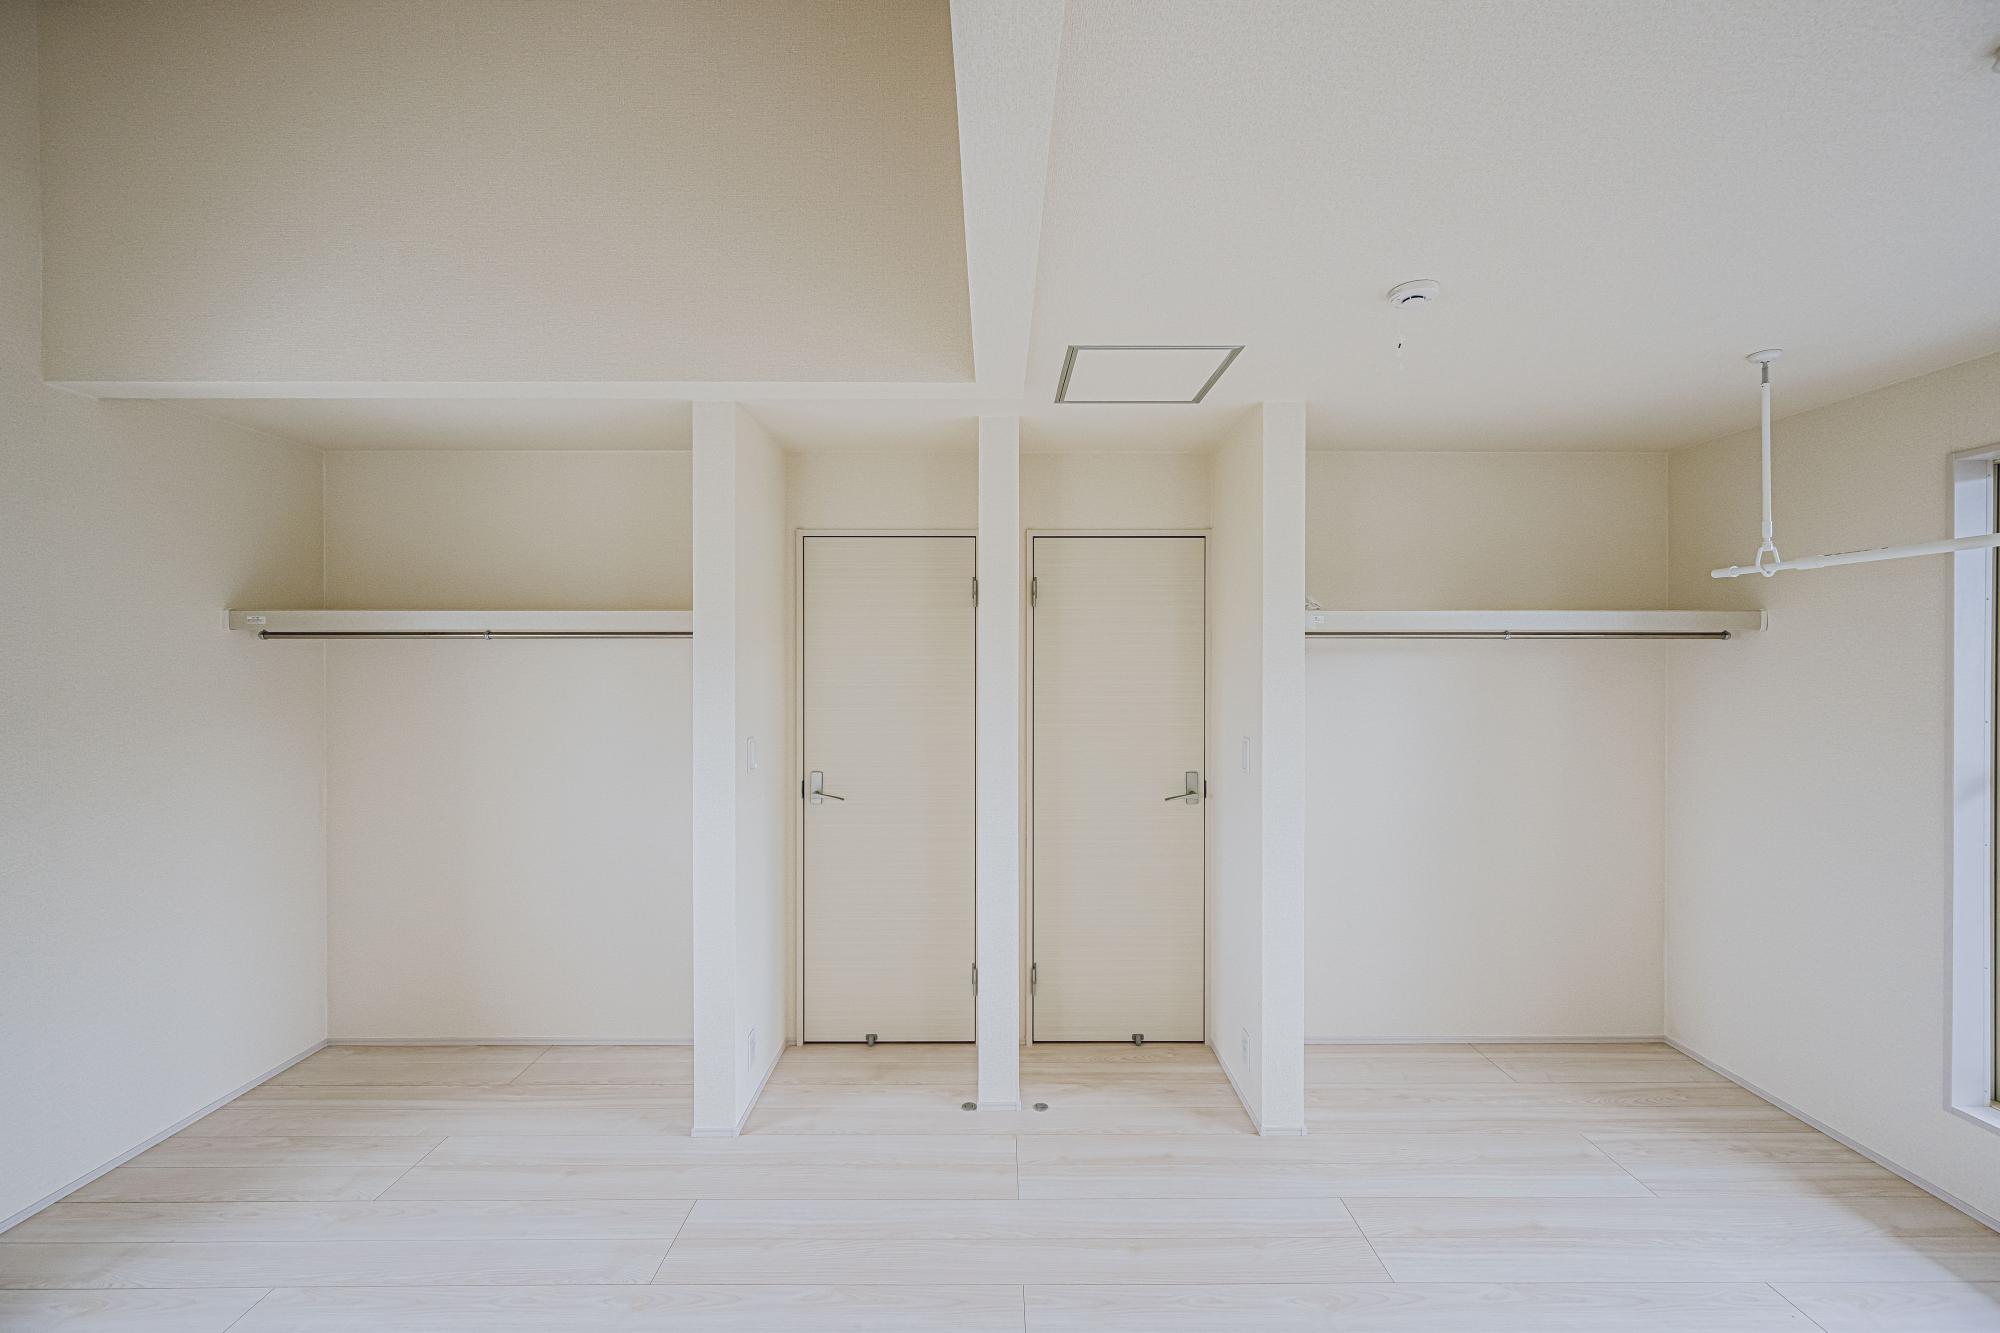 3号棟:フレキシブルルーム10.0帖　部屋を2つに分割したときのために、廊下へ続く扉も2つあります。